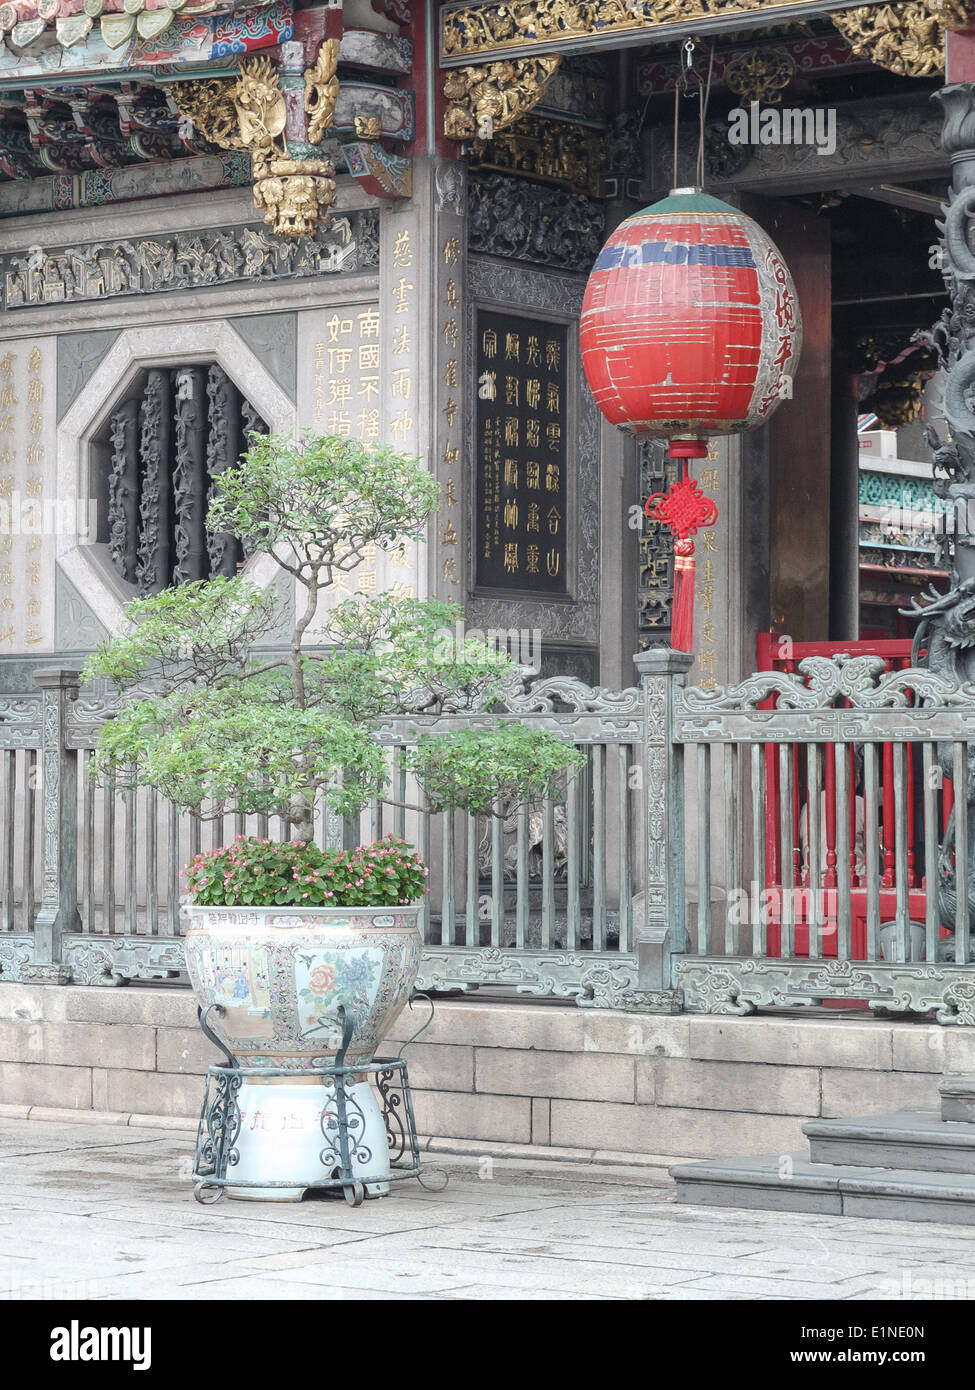 Courtyard at Temple de Longshan, parmi les plus anciens temples Bouddhistes de Taipei, Taiwan. Banque D'Images